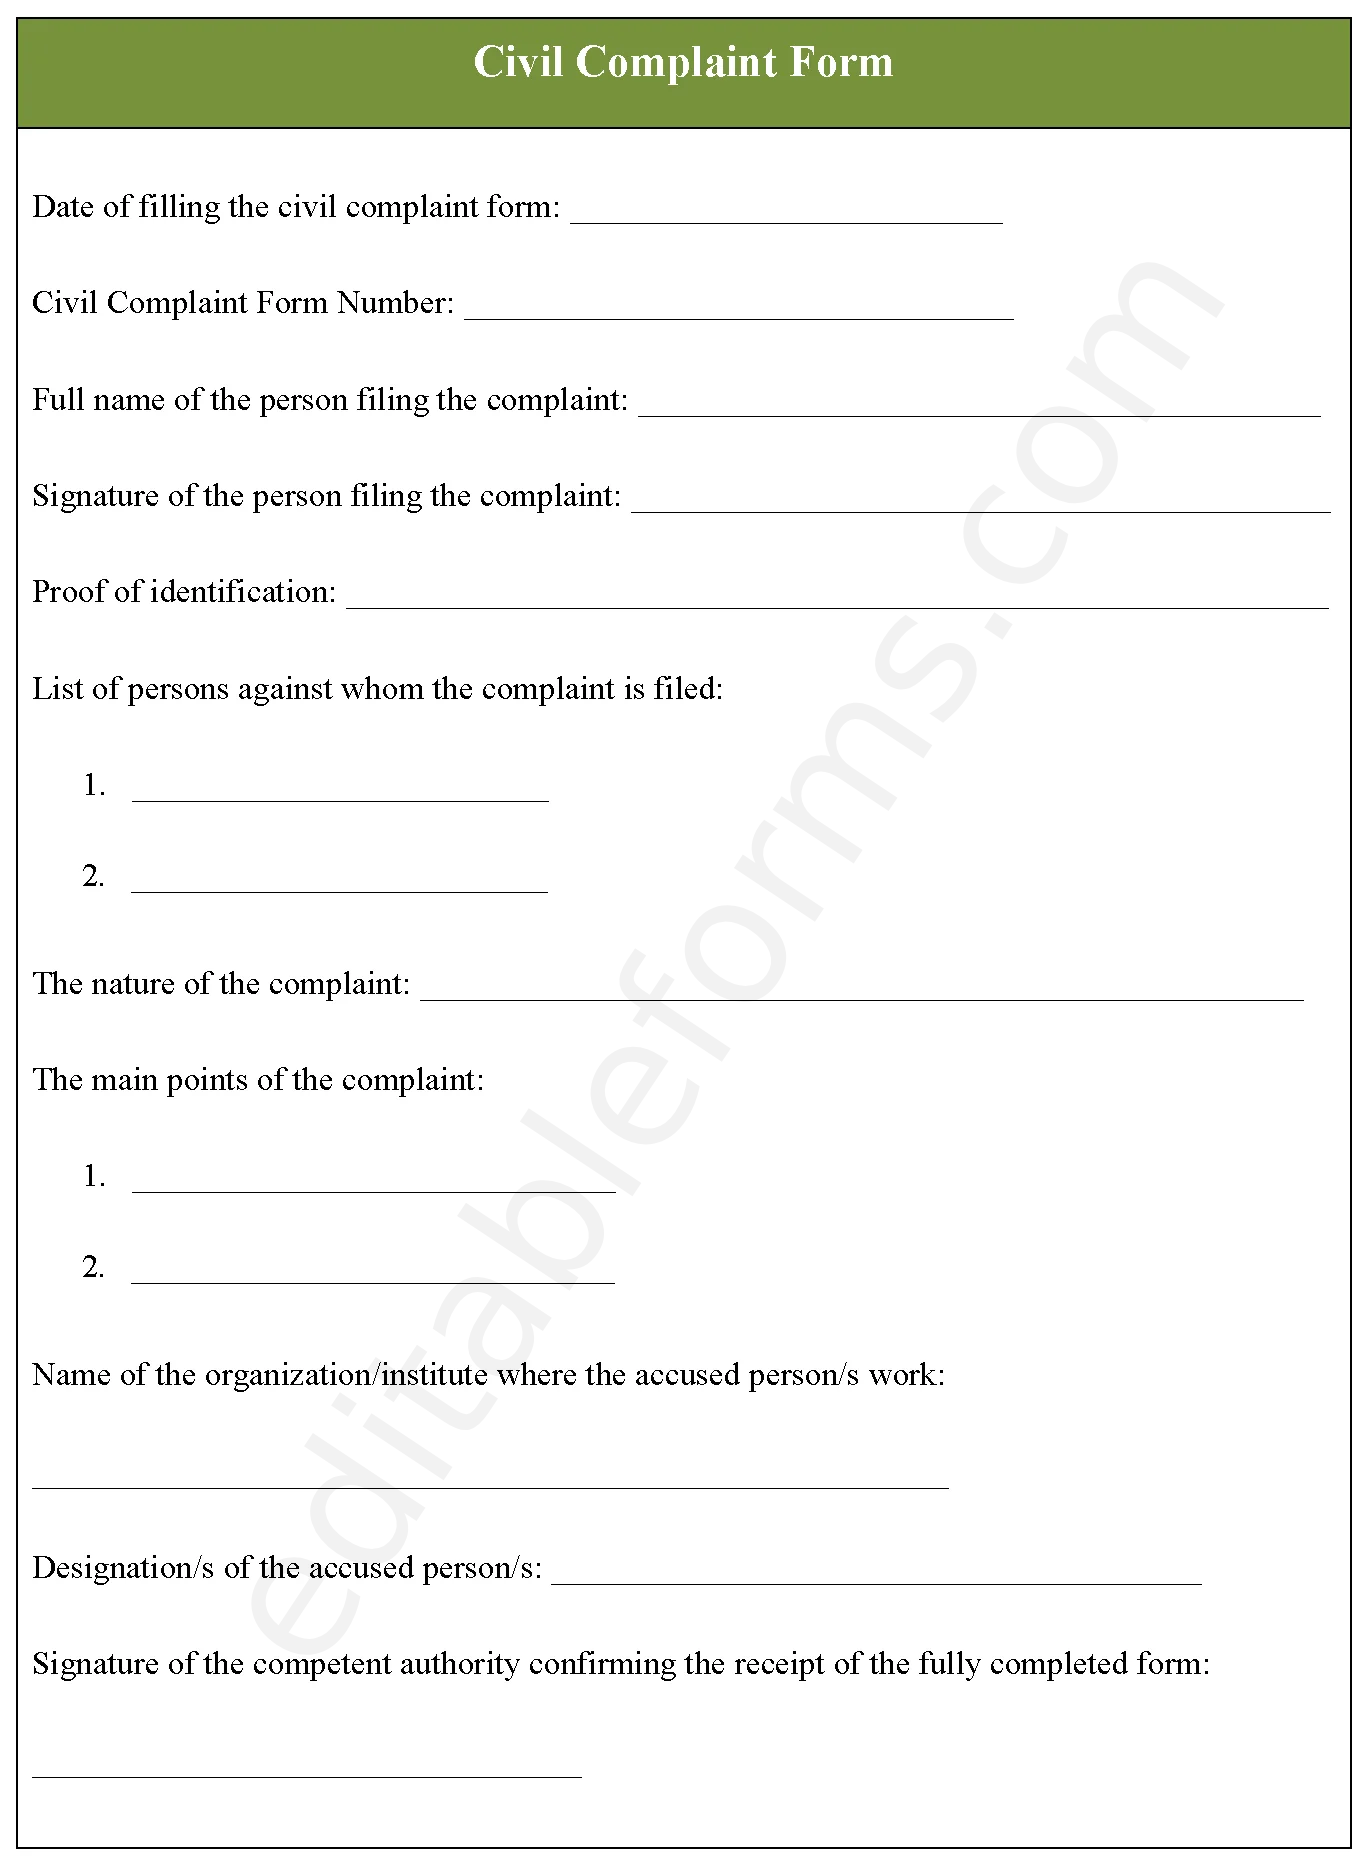 Civil Complaint Fillable PDF Template